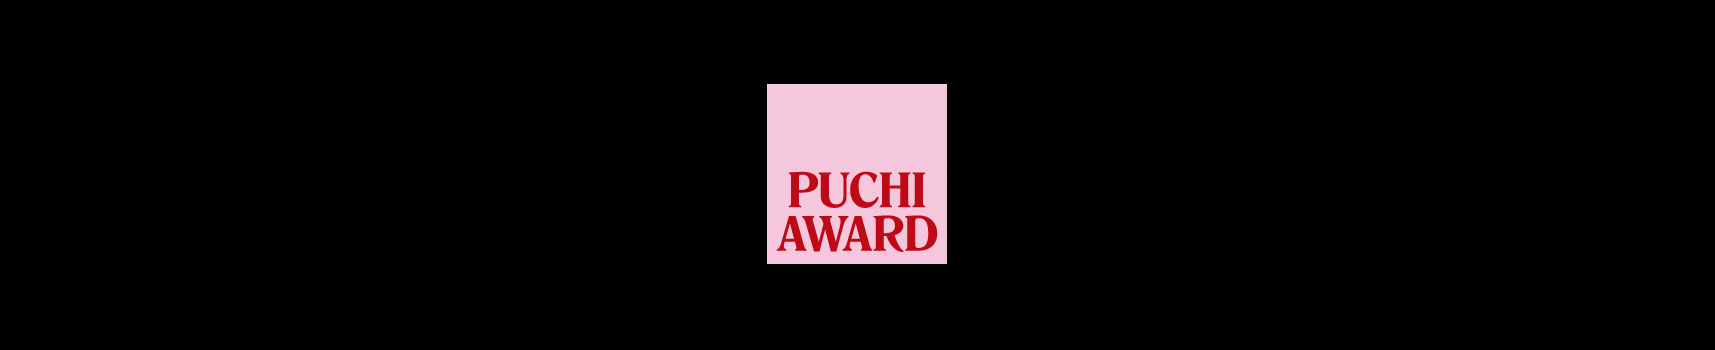 puchi_award